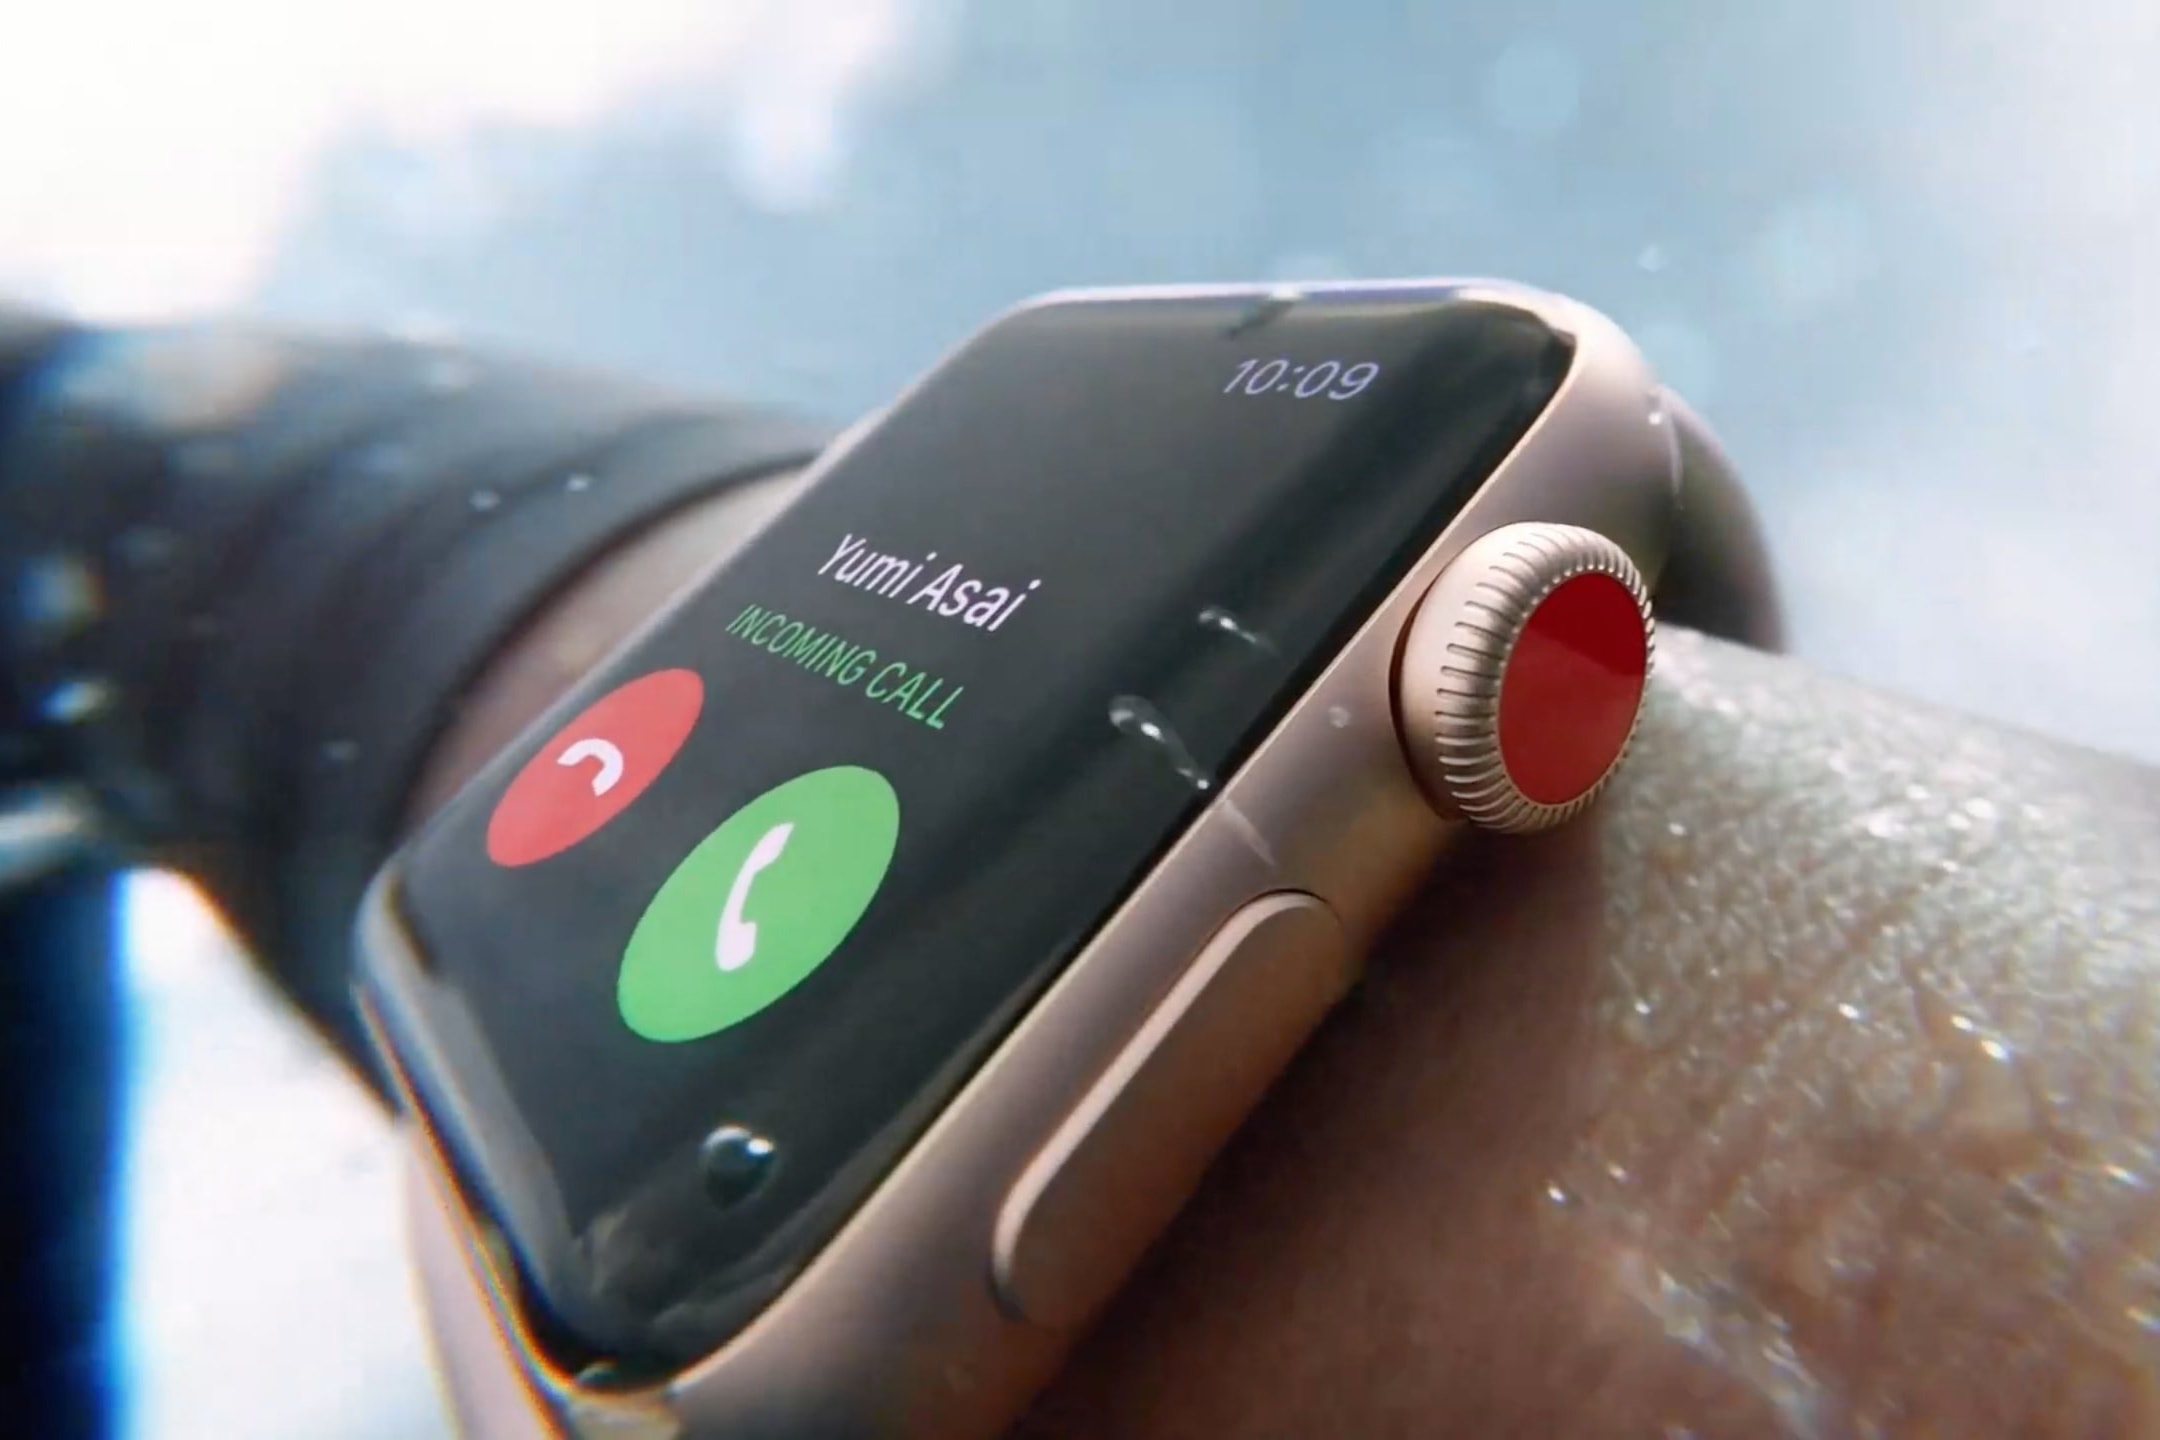 擺脫束縛 - Apple Watch Series 3 LTE 版本香港確認上架